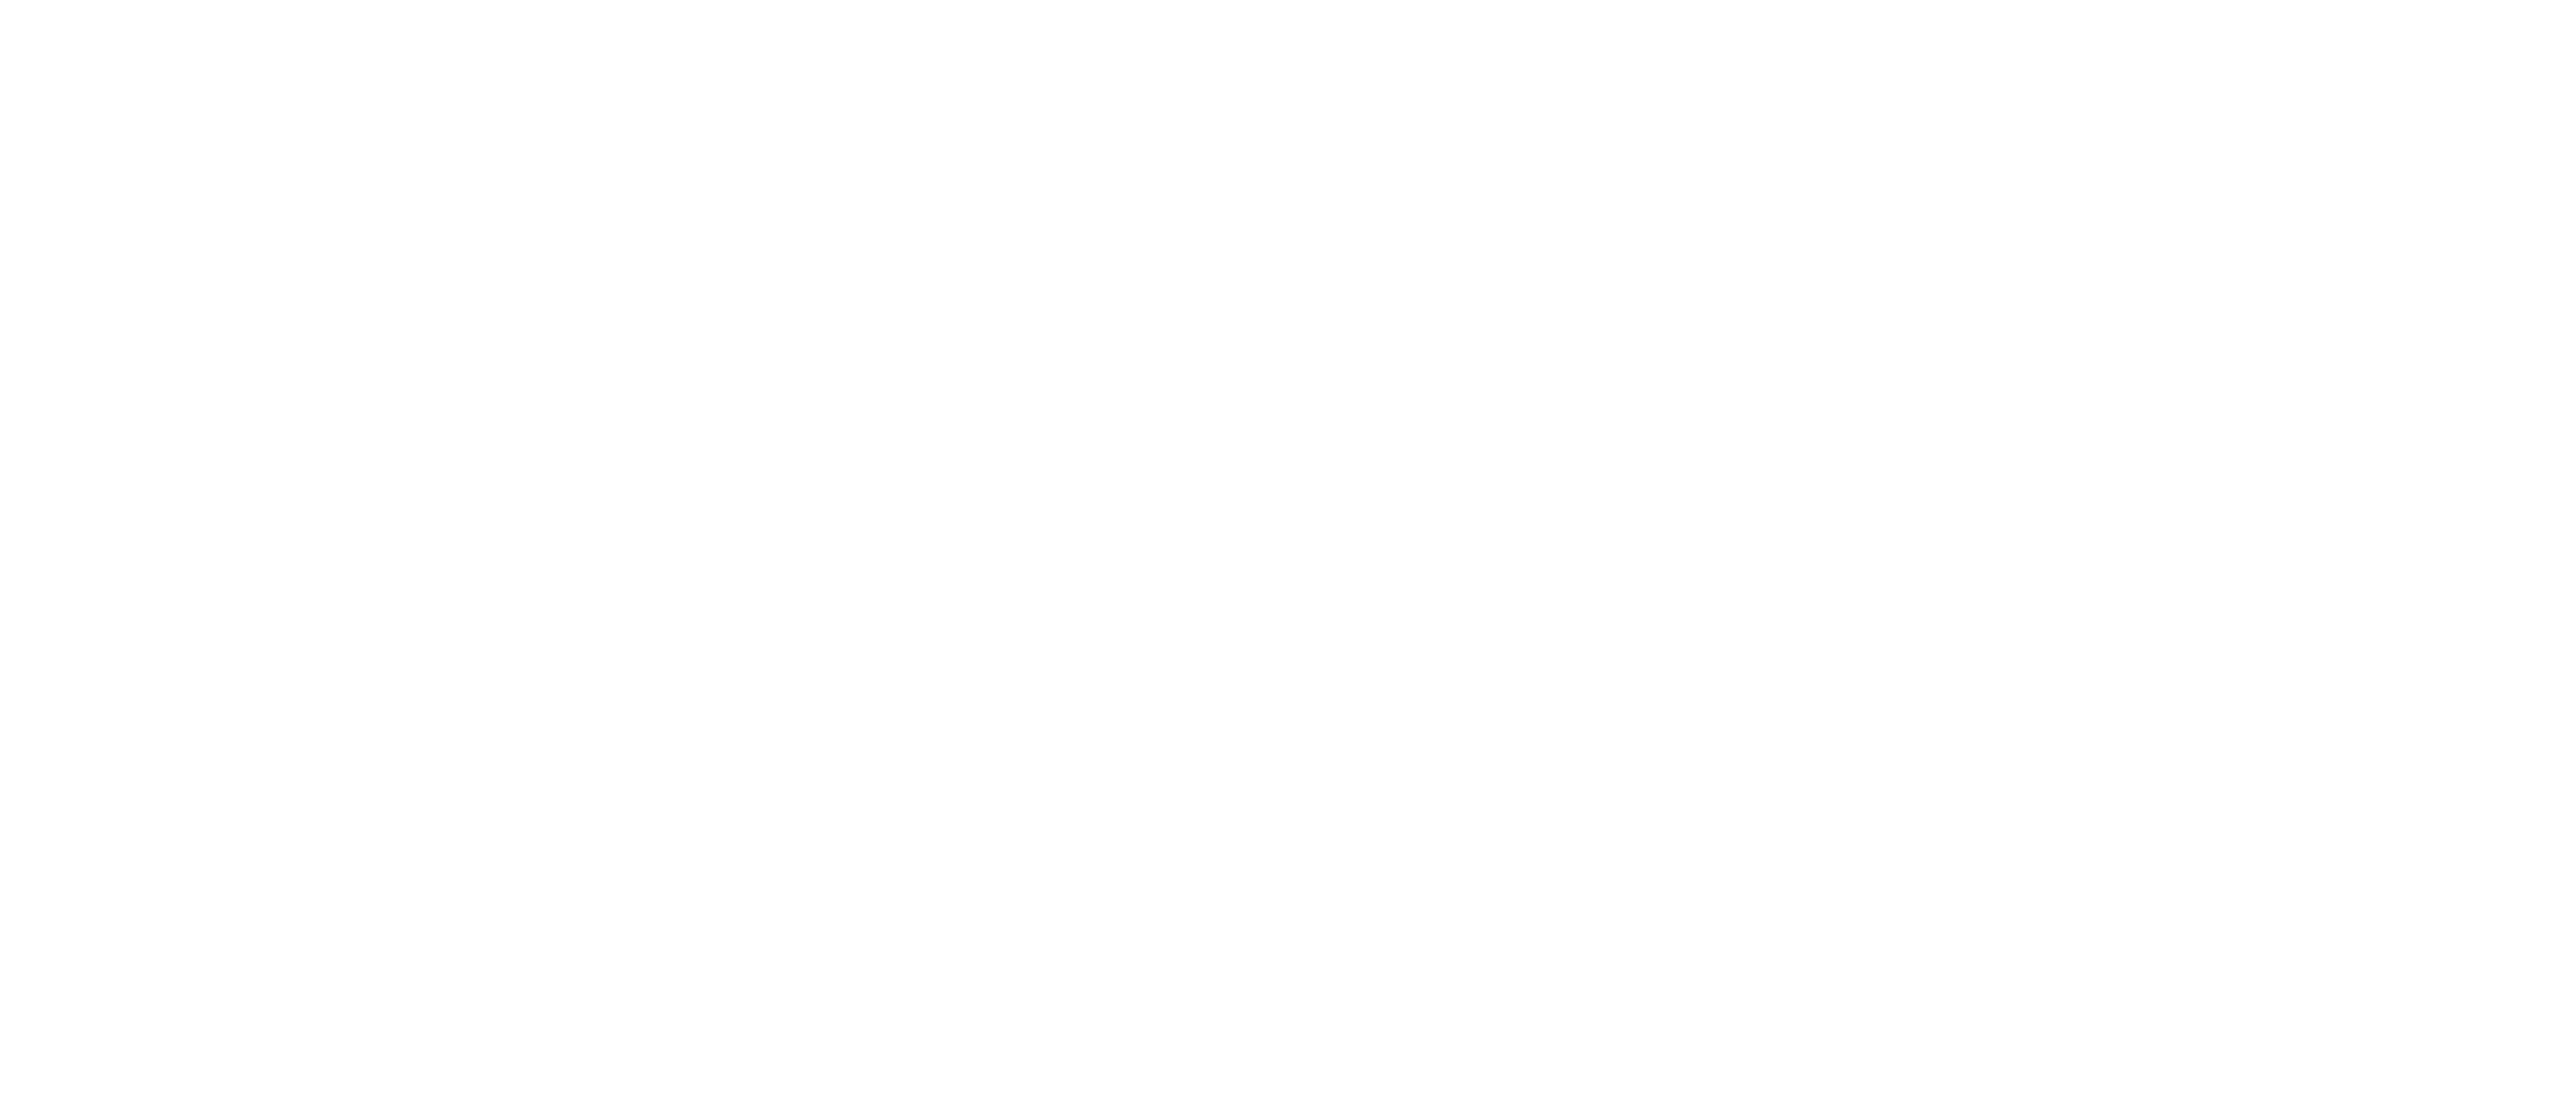 A black and white logo of upland & associates.